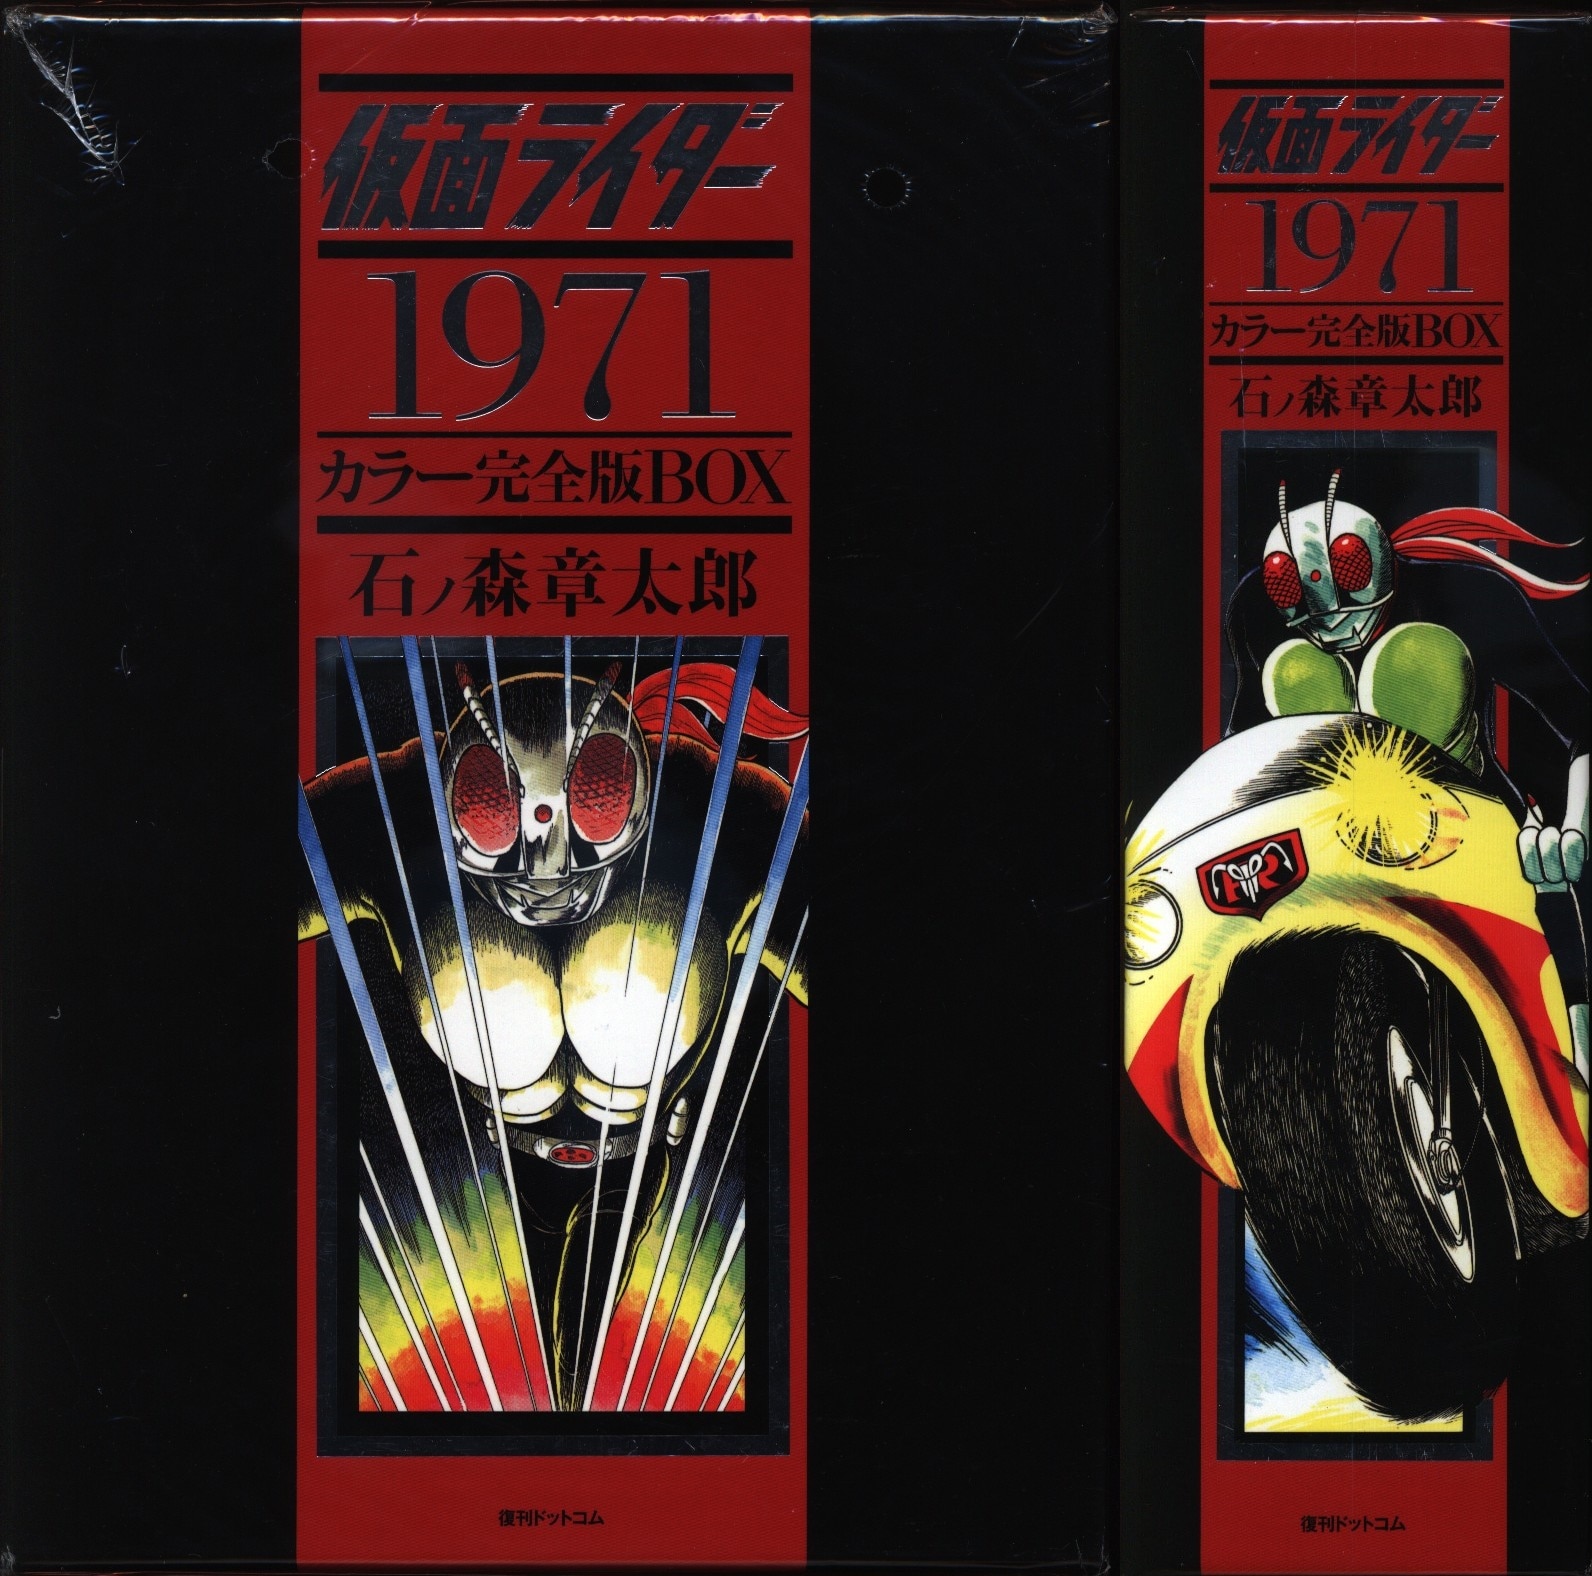 復刊ドットコム 仮面ライダー１９７１ カラー完全版BOX 石ノ森章太郎 